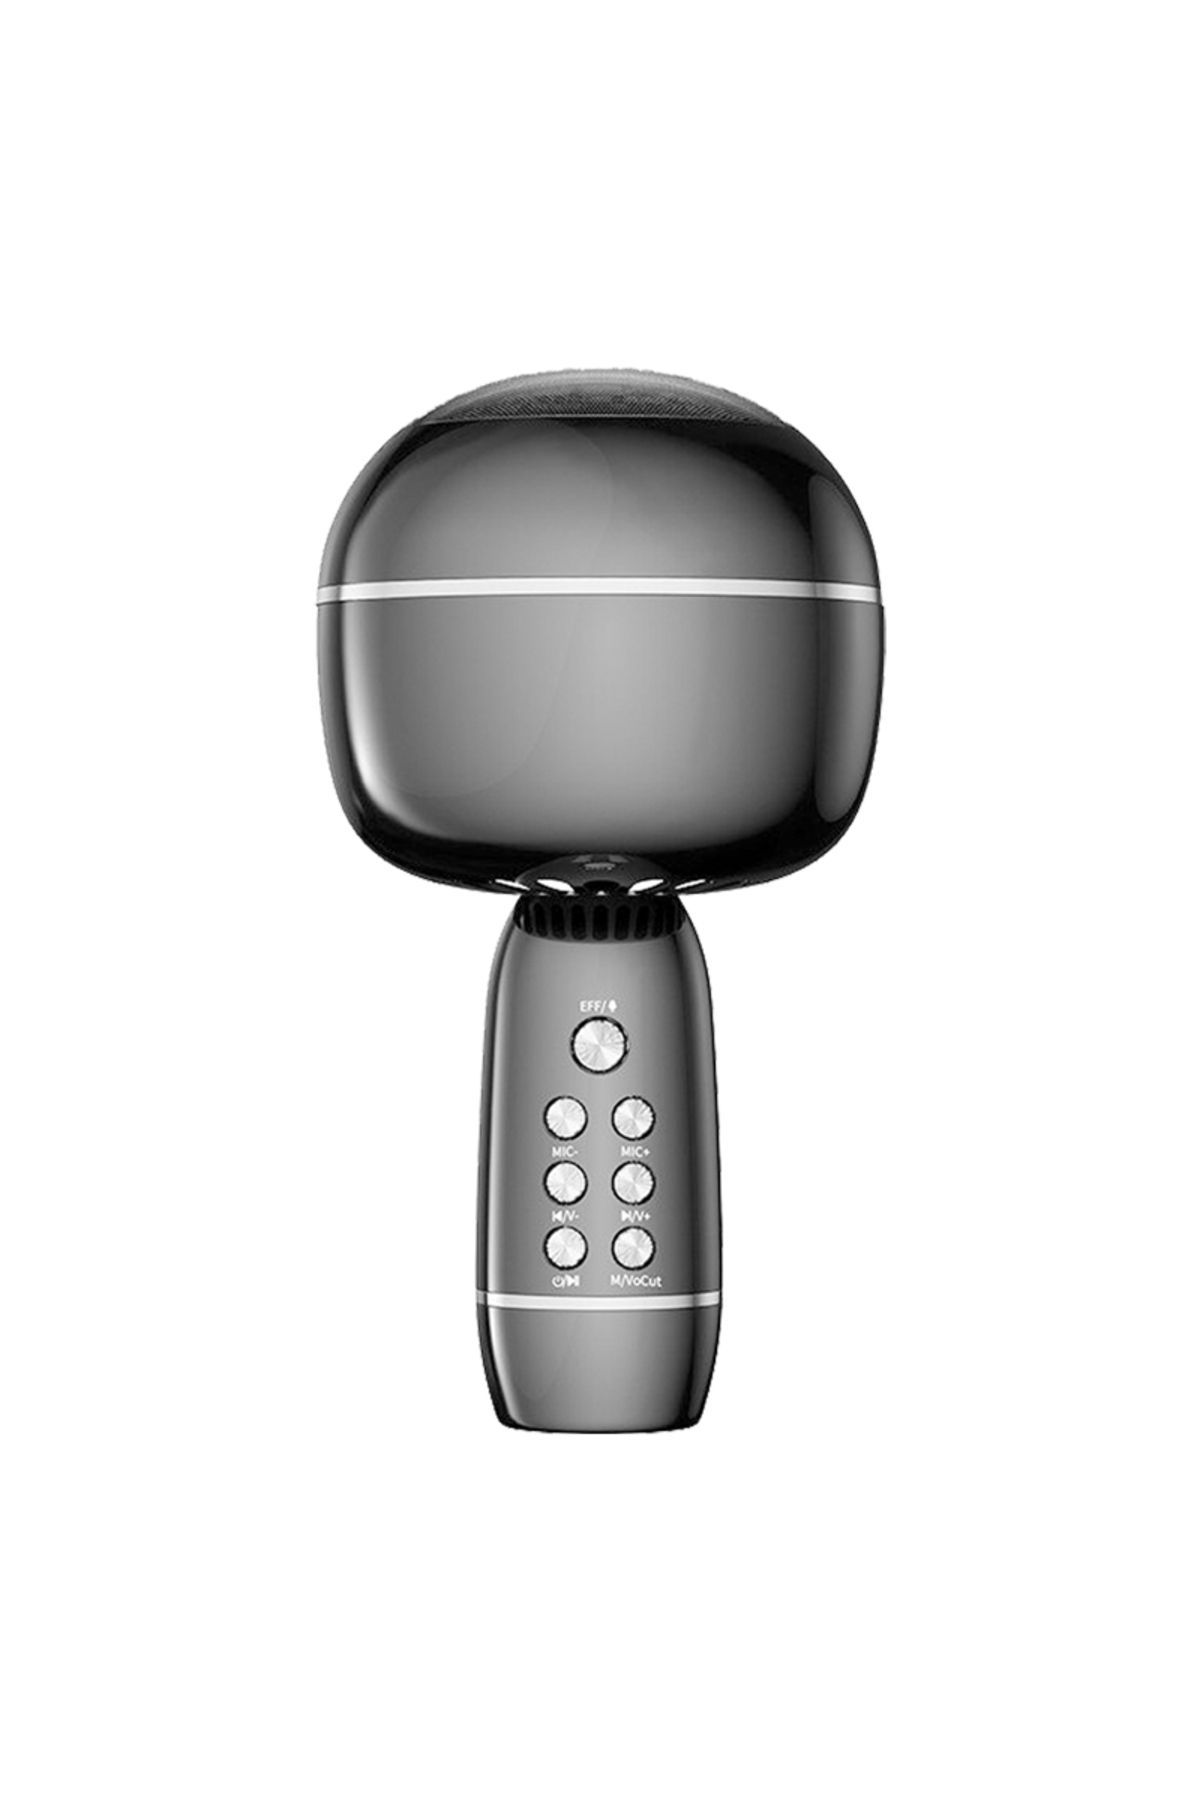 MELFSHOP Magıcvoıce Ys-09 Bluetooth-usb-sd Wıreless Kablosuz Karaoke Mikrofon (81)